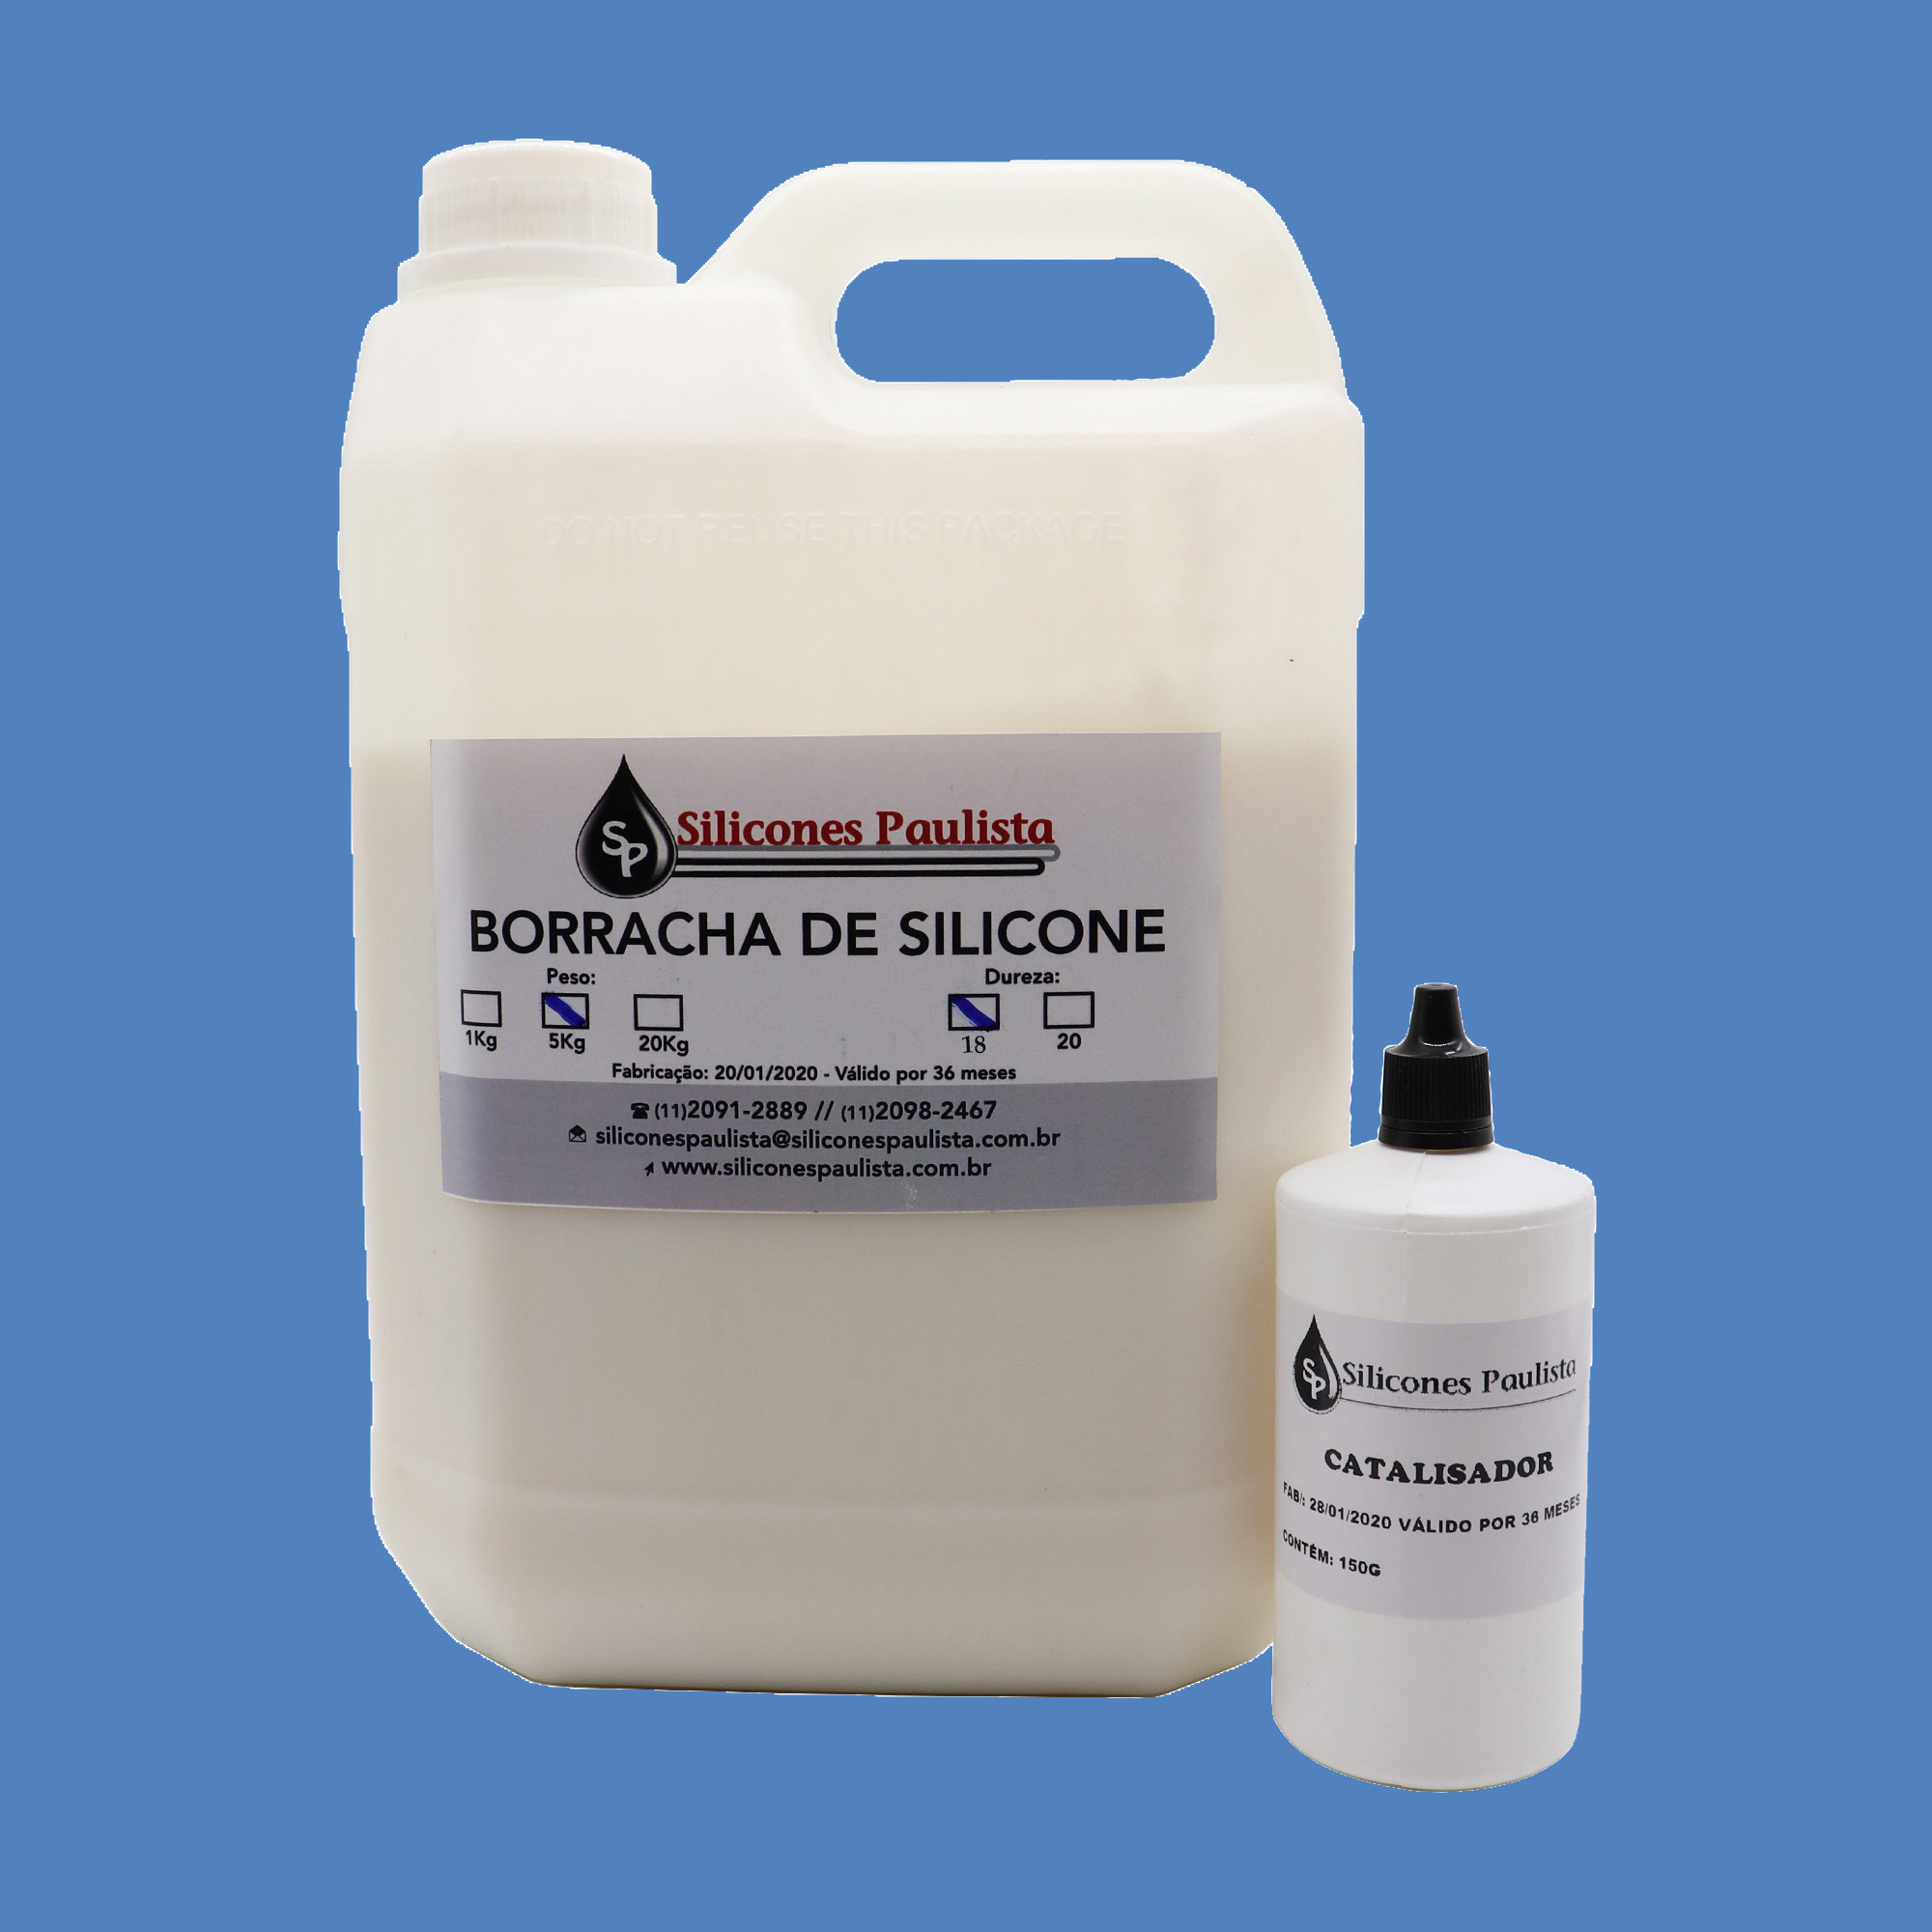 Borracha de Silicone para Artesanato e Moldes (AZUL / Shore18) - 5Kg / 150g